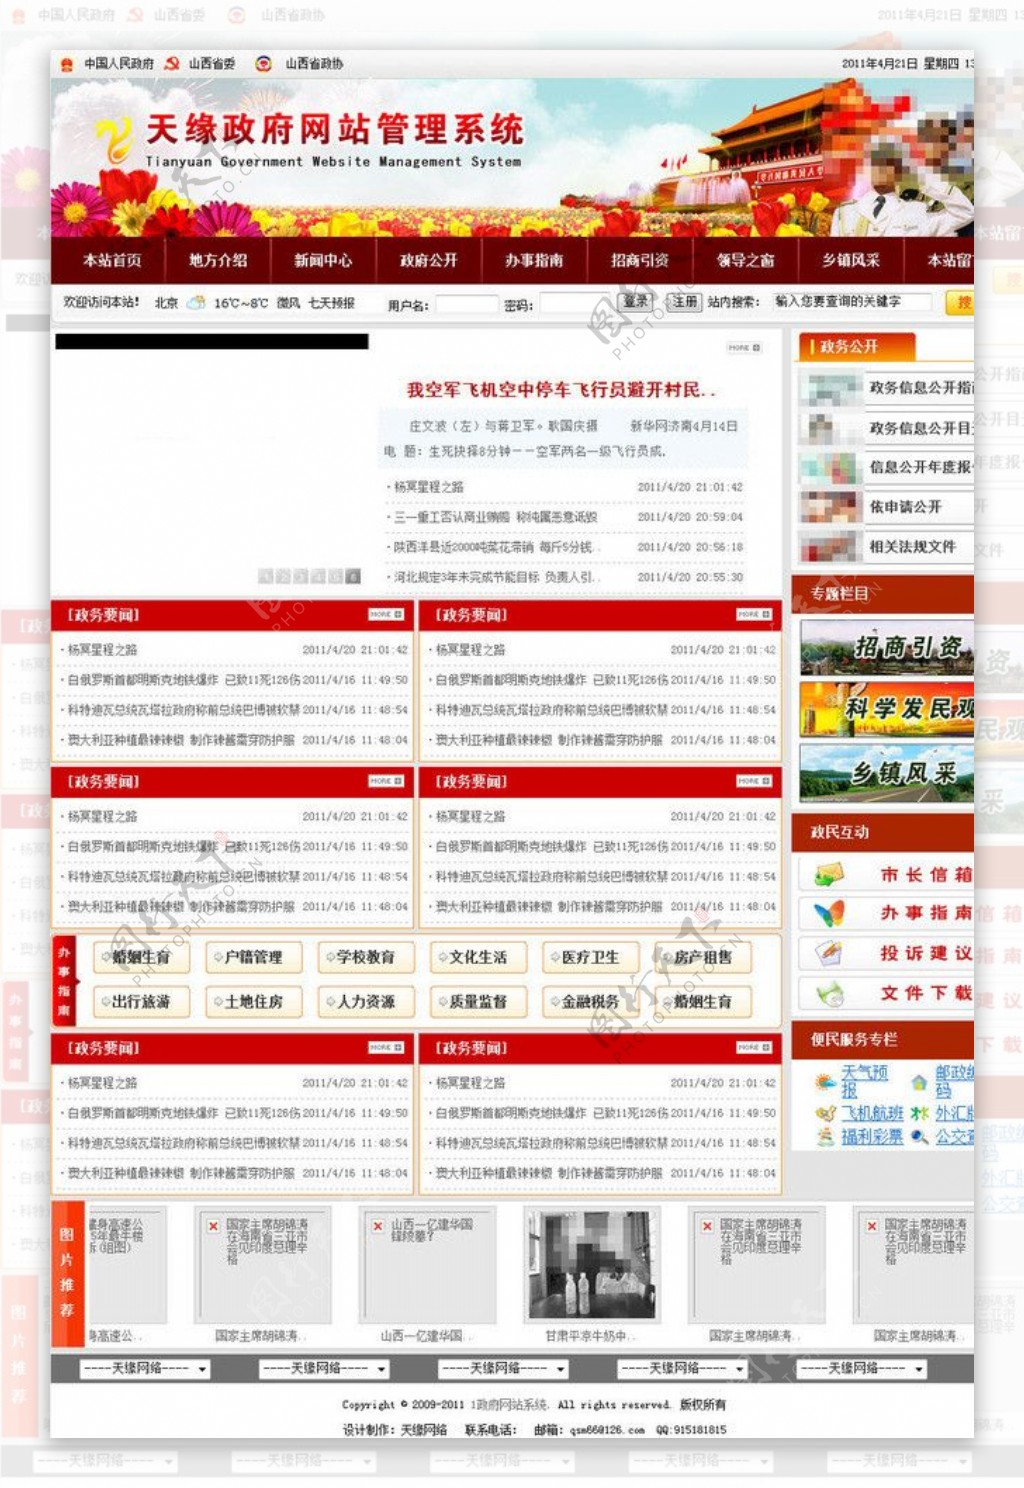 天缘网站系统图片